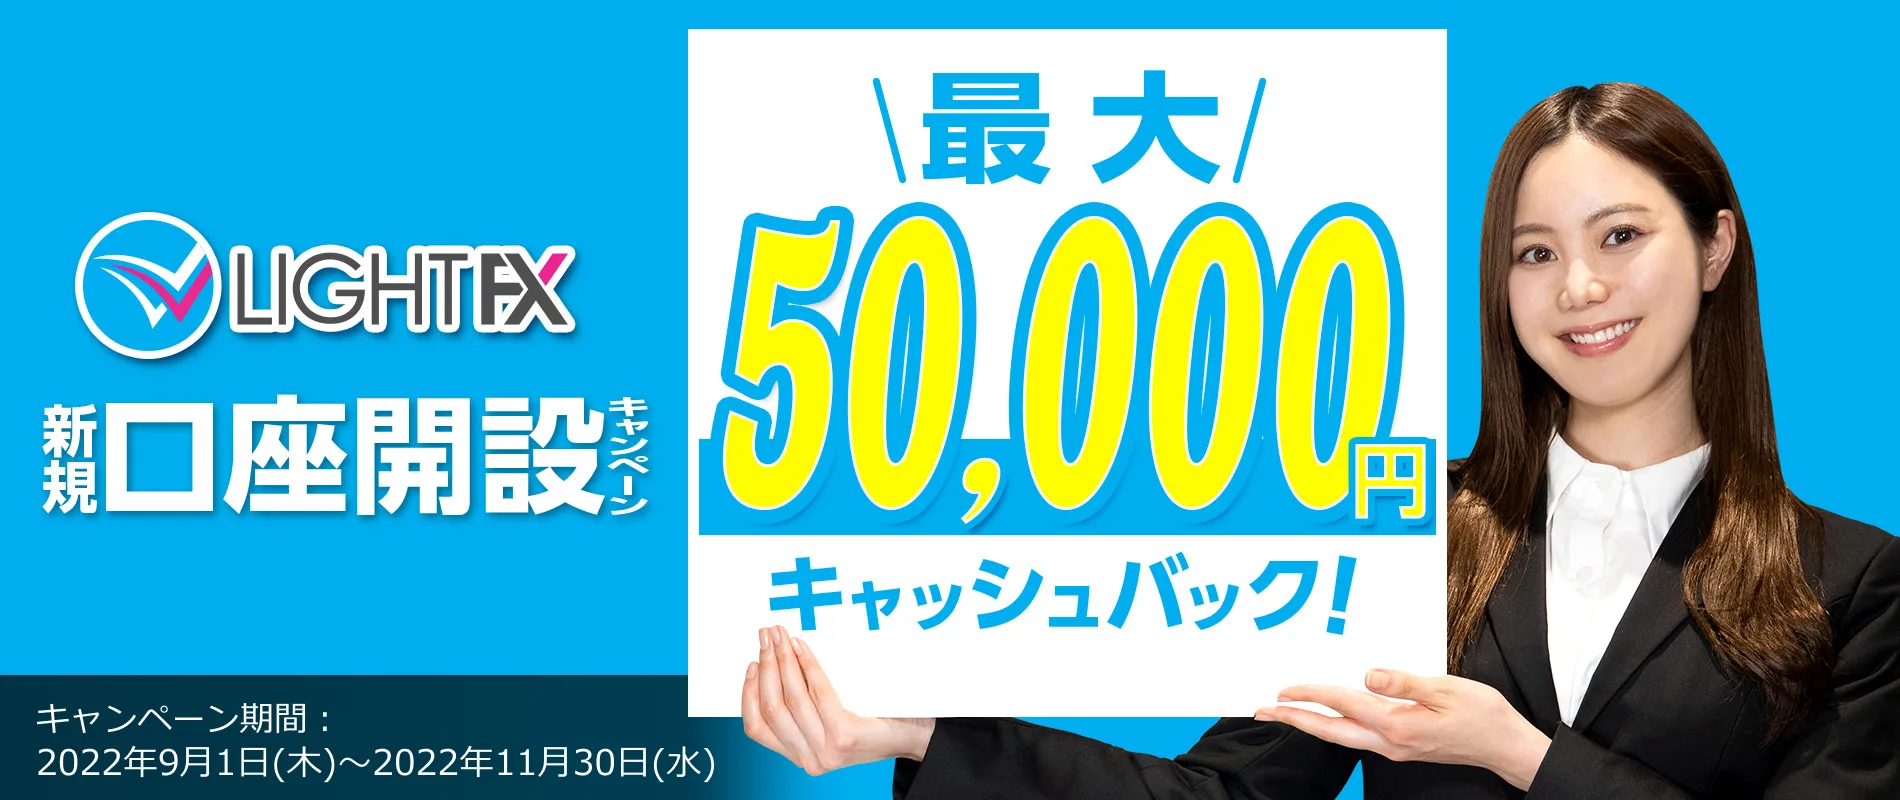 新規口座開設50,000円キャッシュバック(2022年9月～2022年11月)